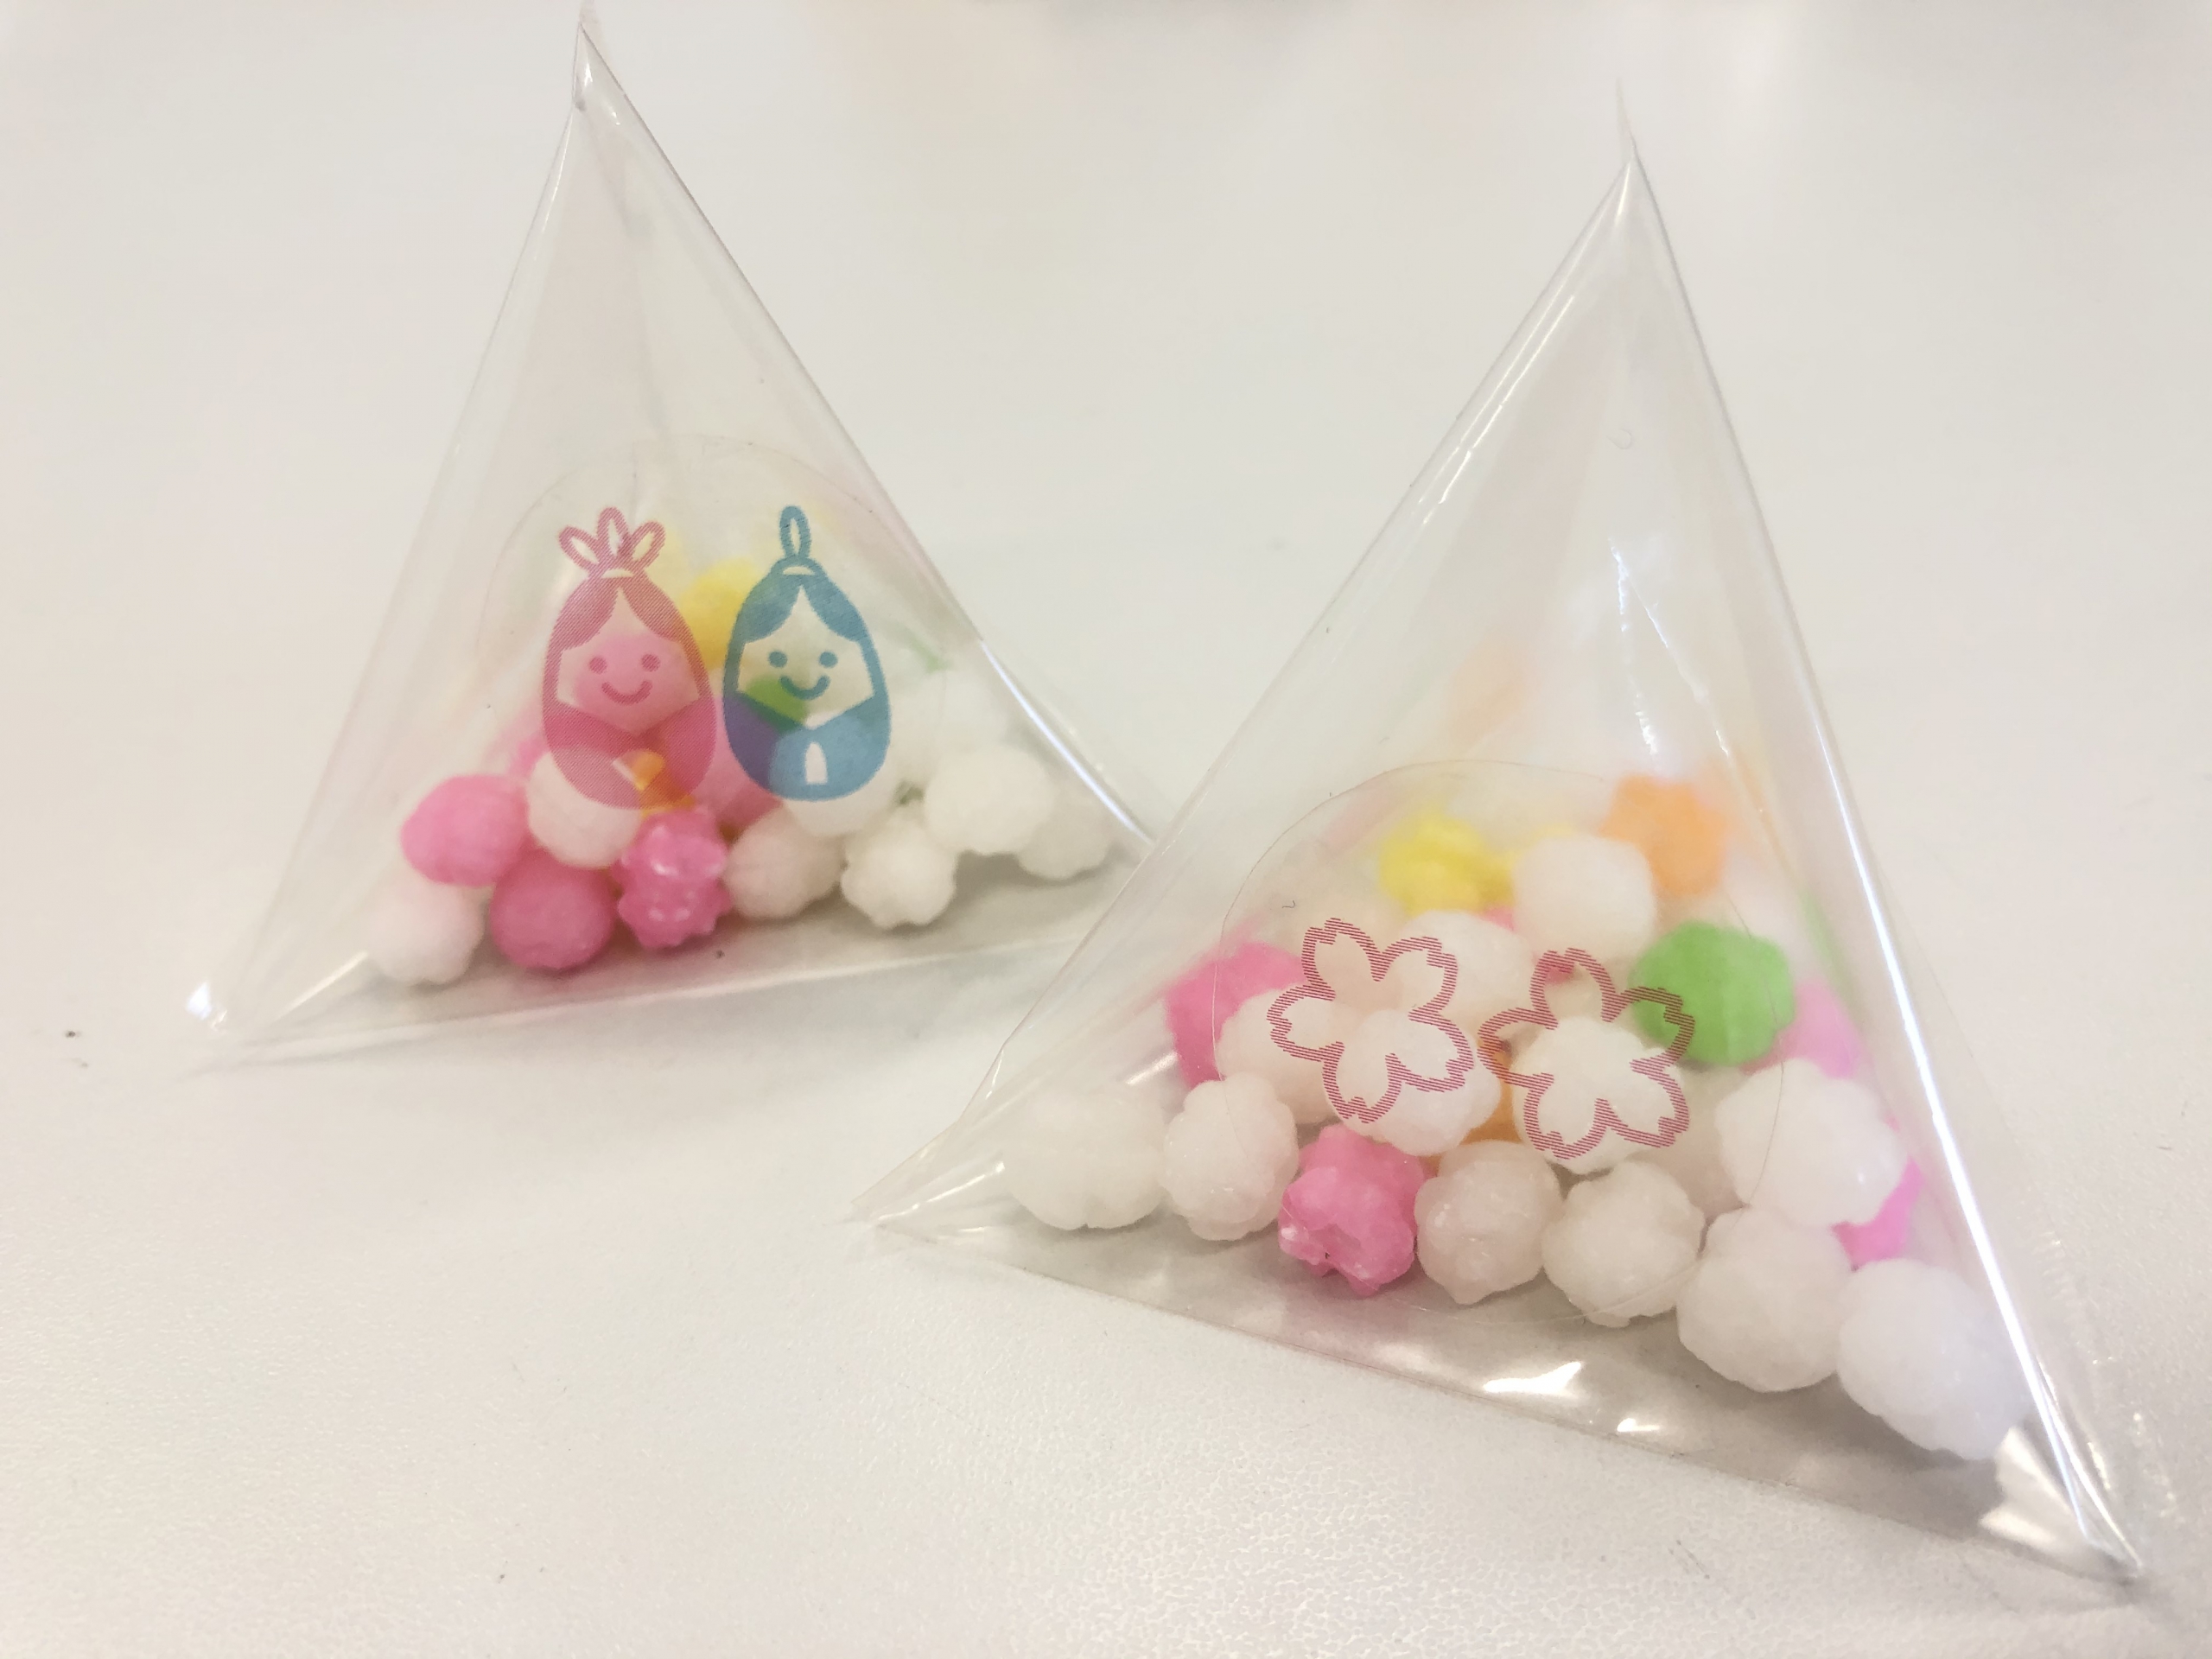 シーラー機でできるお菓子の包装アイデア 朝日産業株式会社